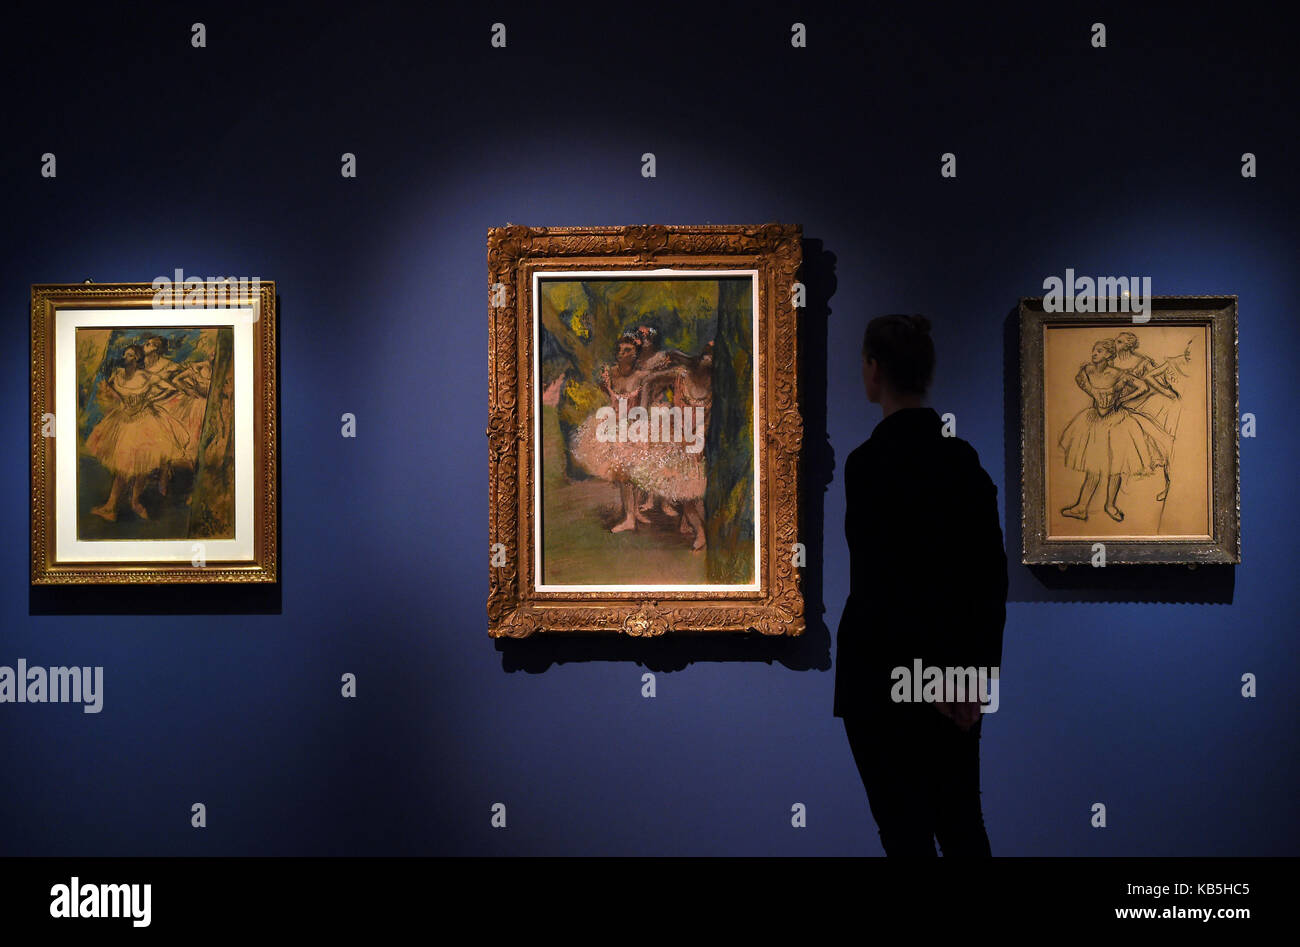 Une femme voit trois variantes de « The Dancers in the Wings » d'Edgar Degas qui sont exposées dans le cadre de l'exposition « Degas: A passion for Perfection » au musée Fitzwilliam de Cambridge. Banque D'Images